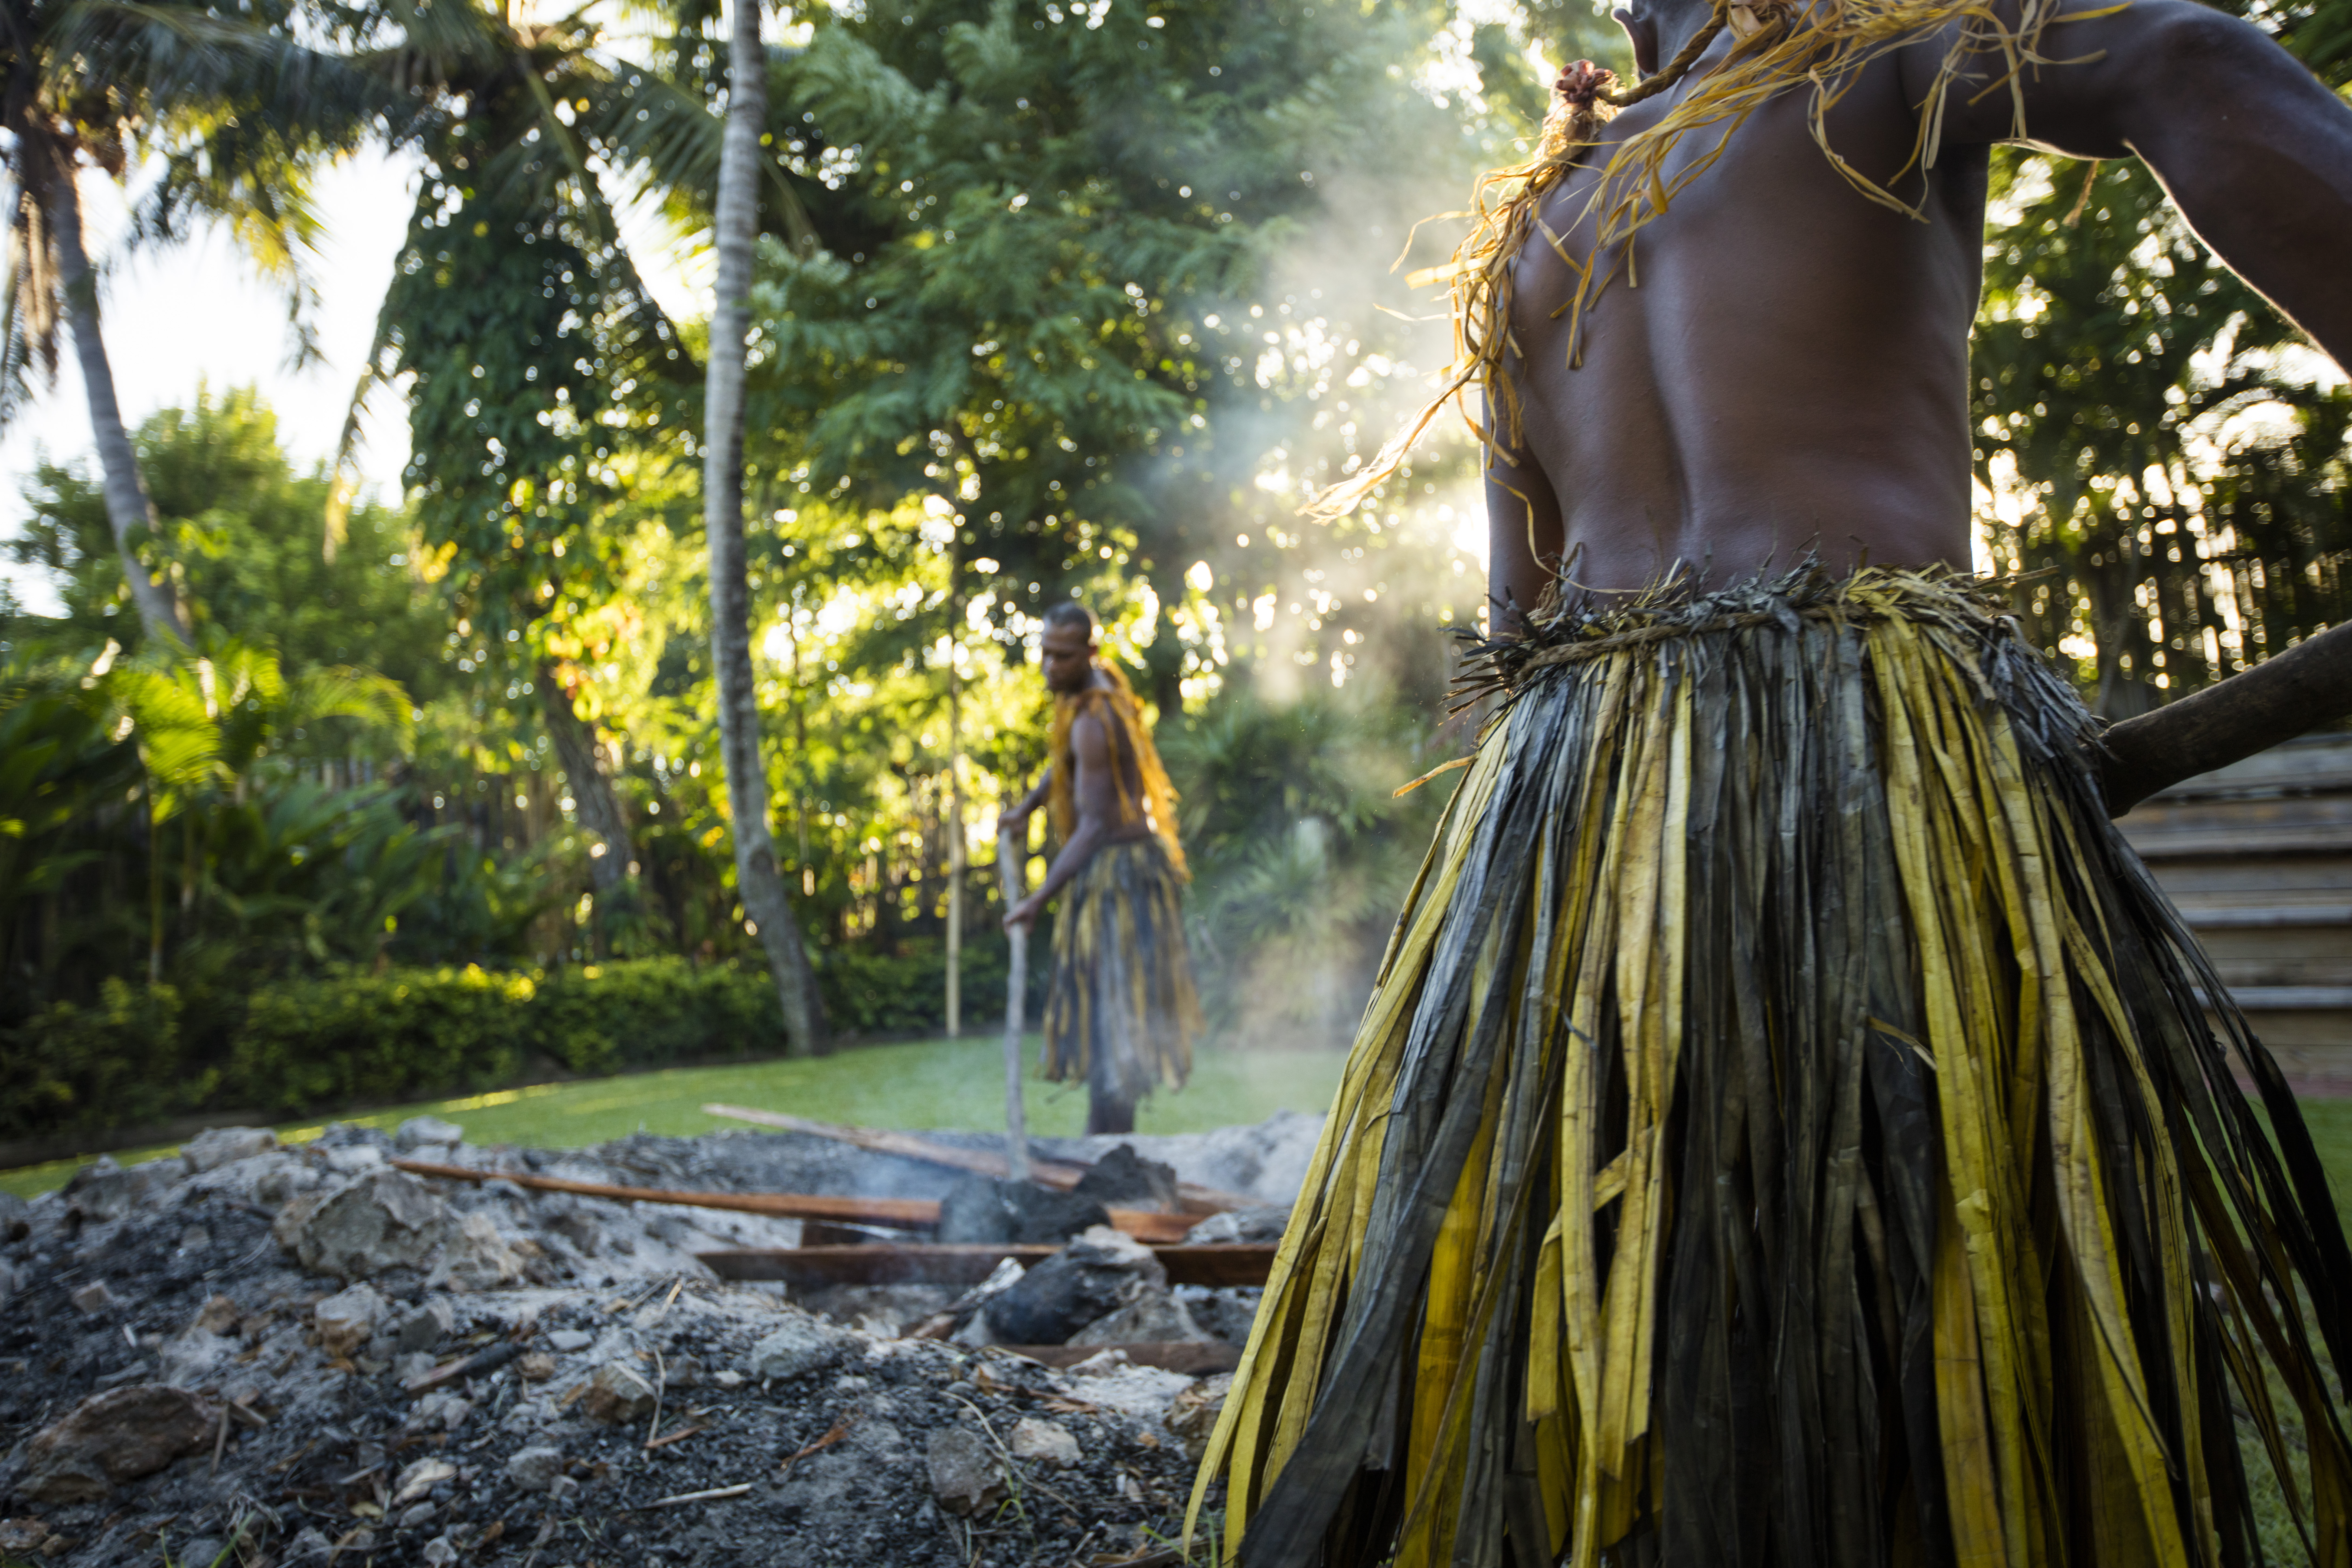 Firewalking in Fiji